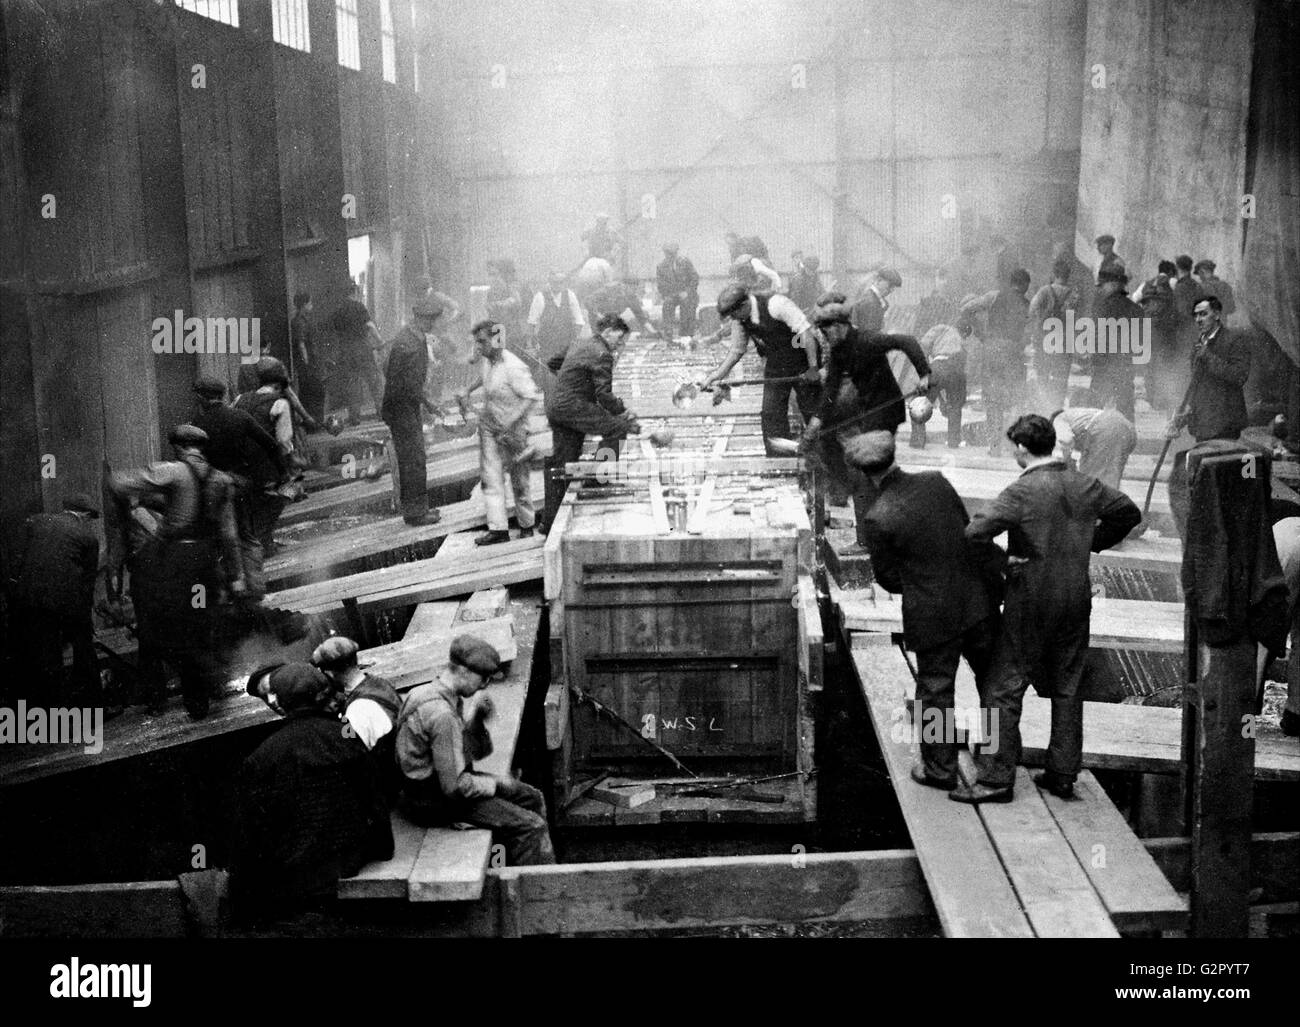 AJAXNETPHOTO. 1930S. GOSPORT, Angleterre. - Les TRAVAILLEURS DE LA COUR CAMPER & NICHOLSON CHAUD COULER DU PLOMB DANS LA QUILLE MOULE DE L'YACHT CLASSE J VELSHEDA EN CONSTRUCTION. PHOTO:AJAX VINTAGE PHOTO LIBRARY REF:HDD   1930 YA VELSHEDA Banque D'Images